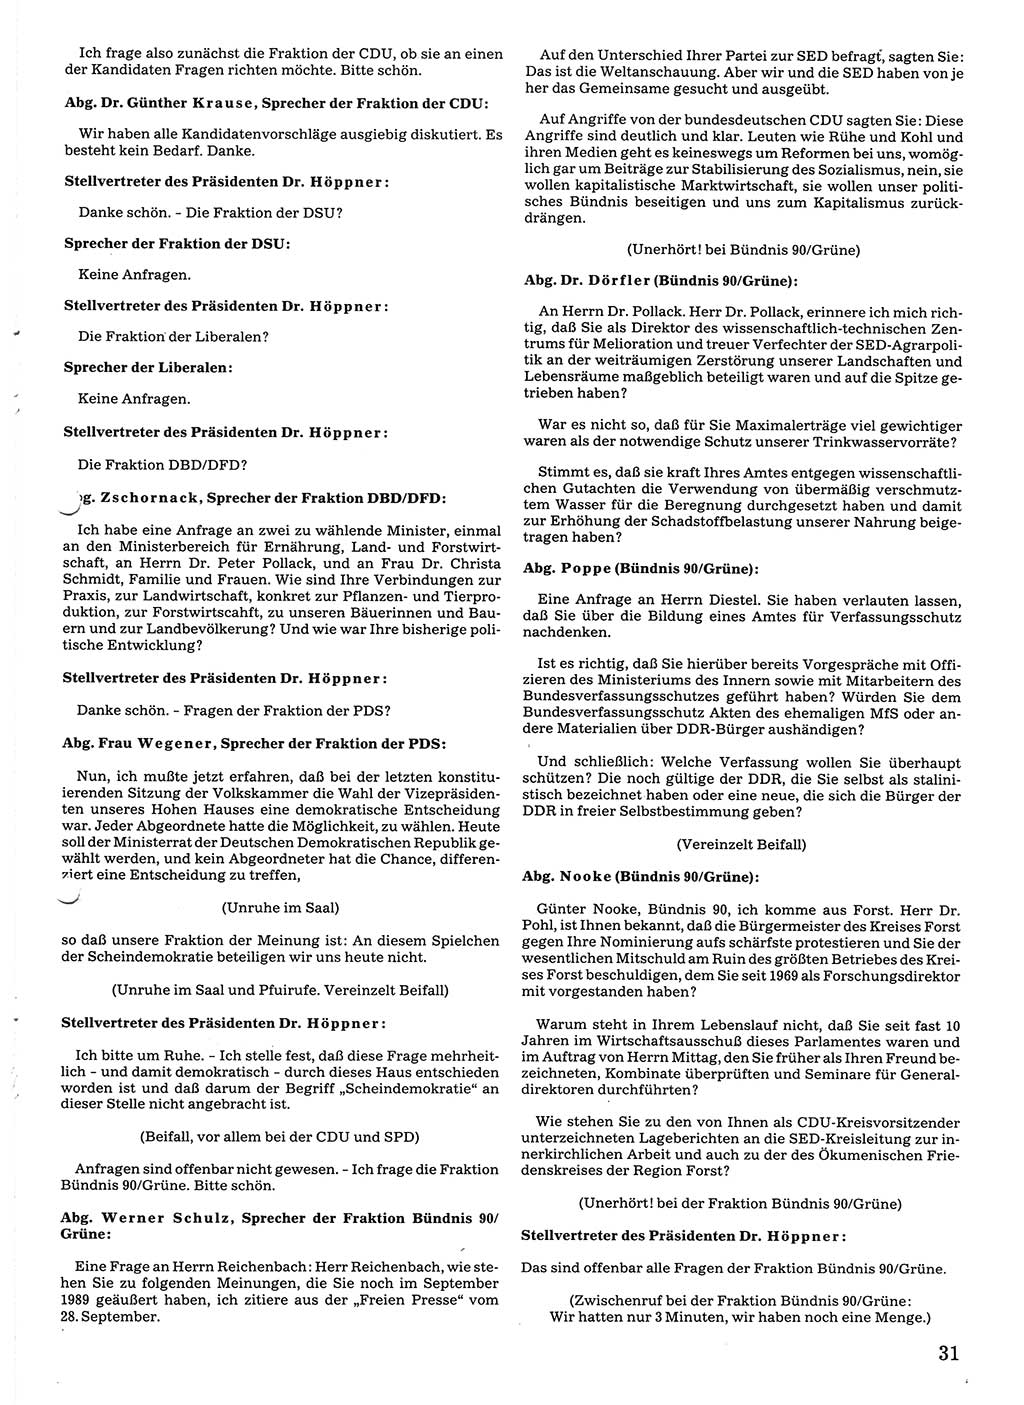 Tagungen der Volkskammer (VK) der Deutschen Demokratischen Republik (DDR), 10. Wahlperiode 1990, Seite 31 (VK. DDR 10. WP. 1990, Prot. Tg. 1-38, 5.4.-2.10.1990, S. 31)